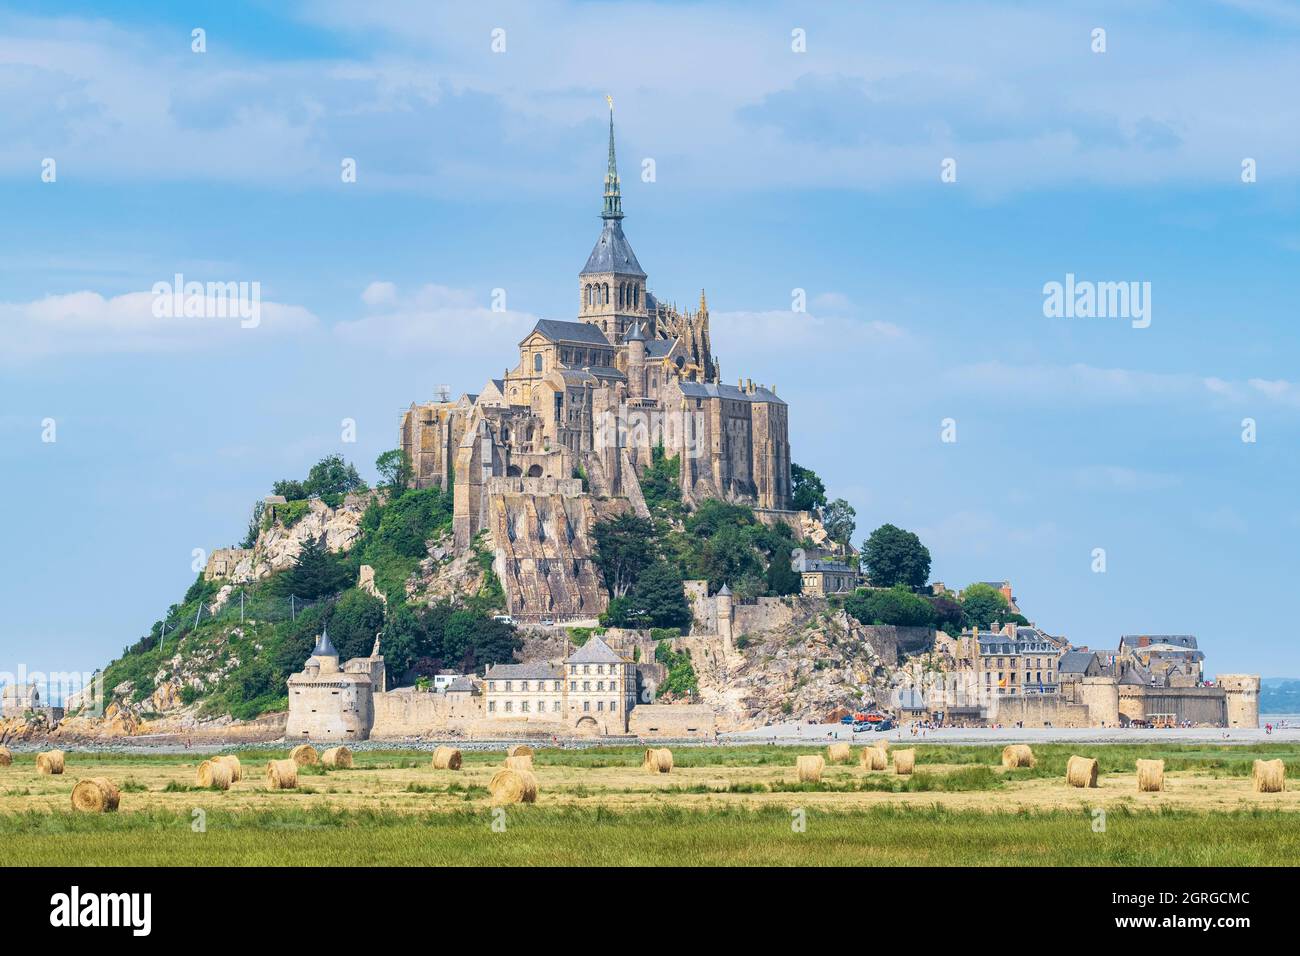 France, Manche, Le Mont Saint-Michel, Mont Saint-Michel abbey on its rocky tidal island (UNESCO World Heritage site) Stock Photo